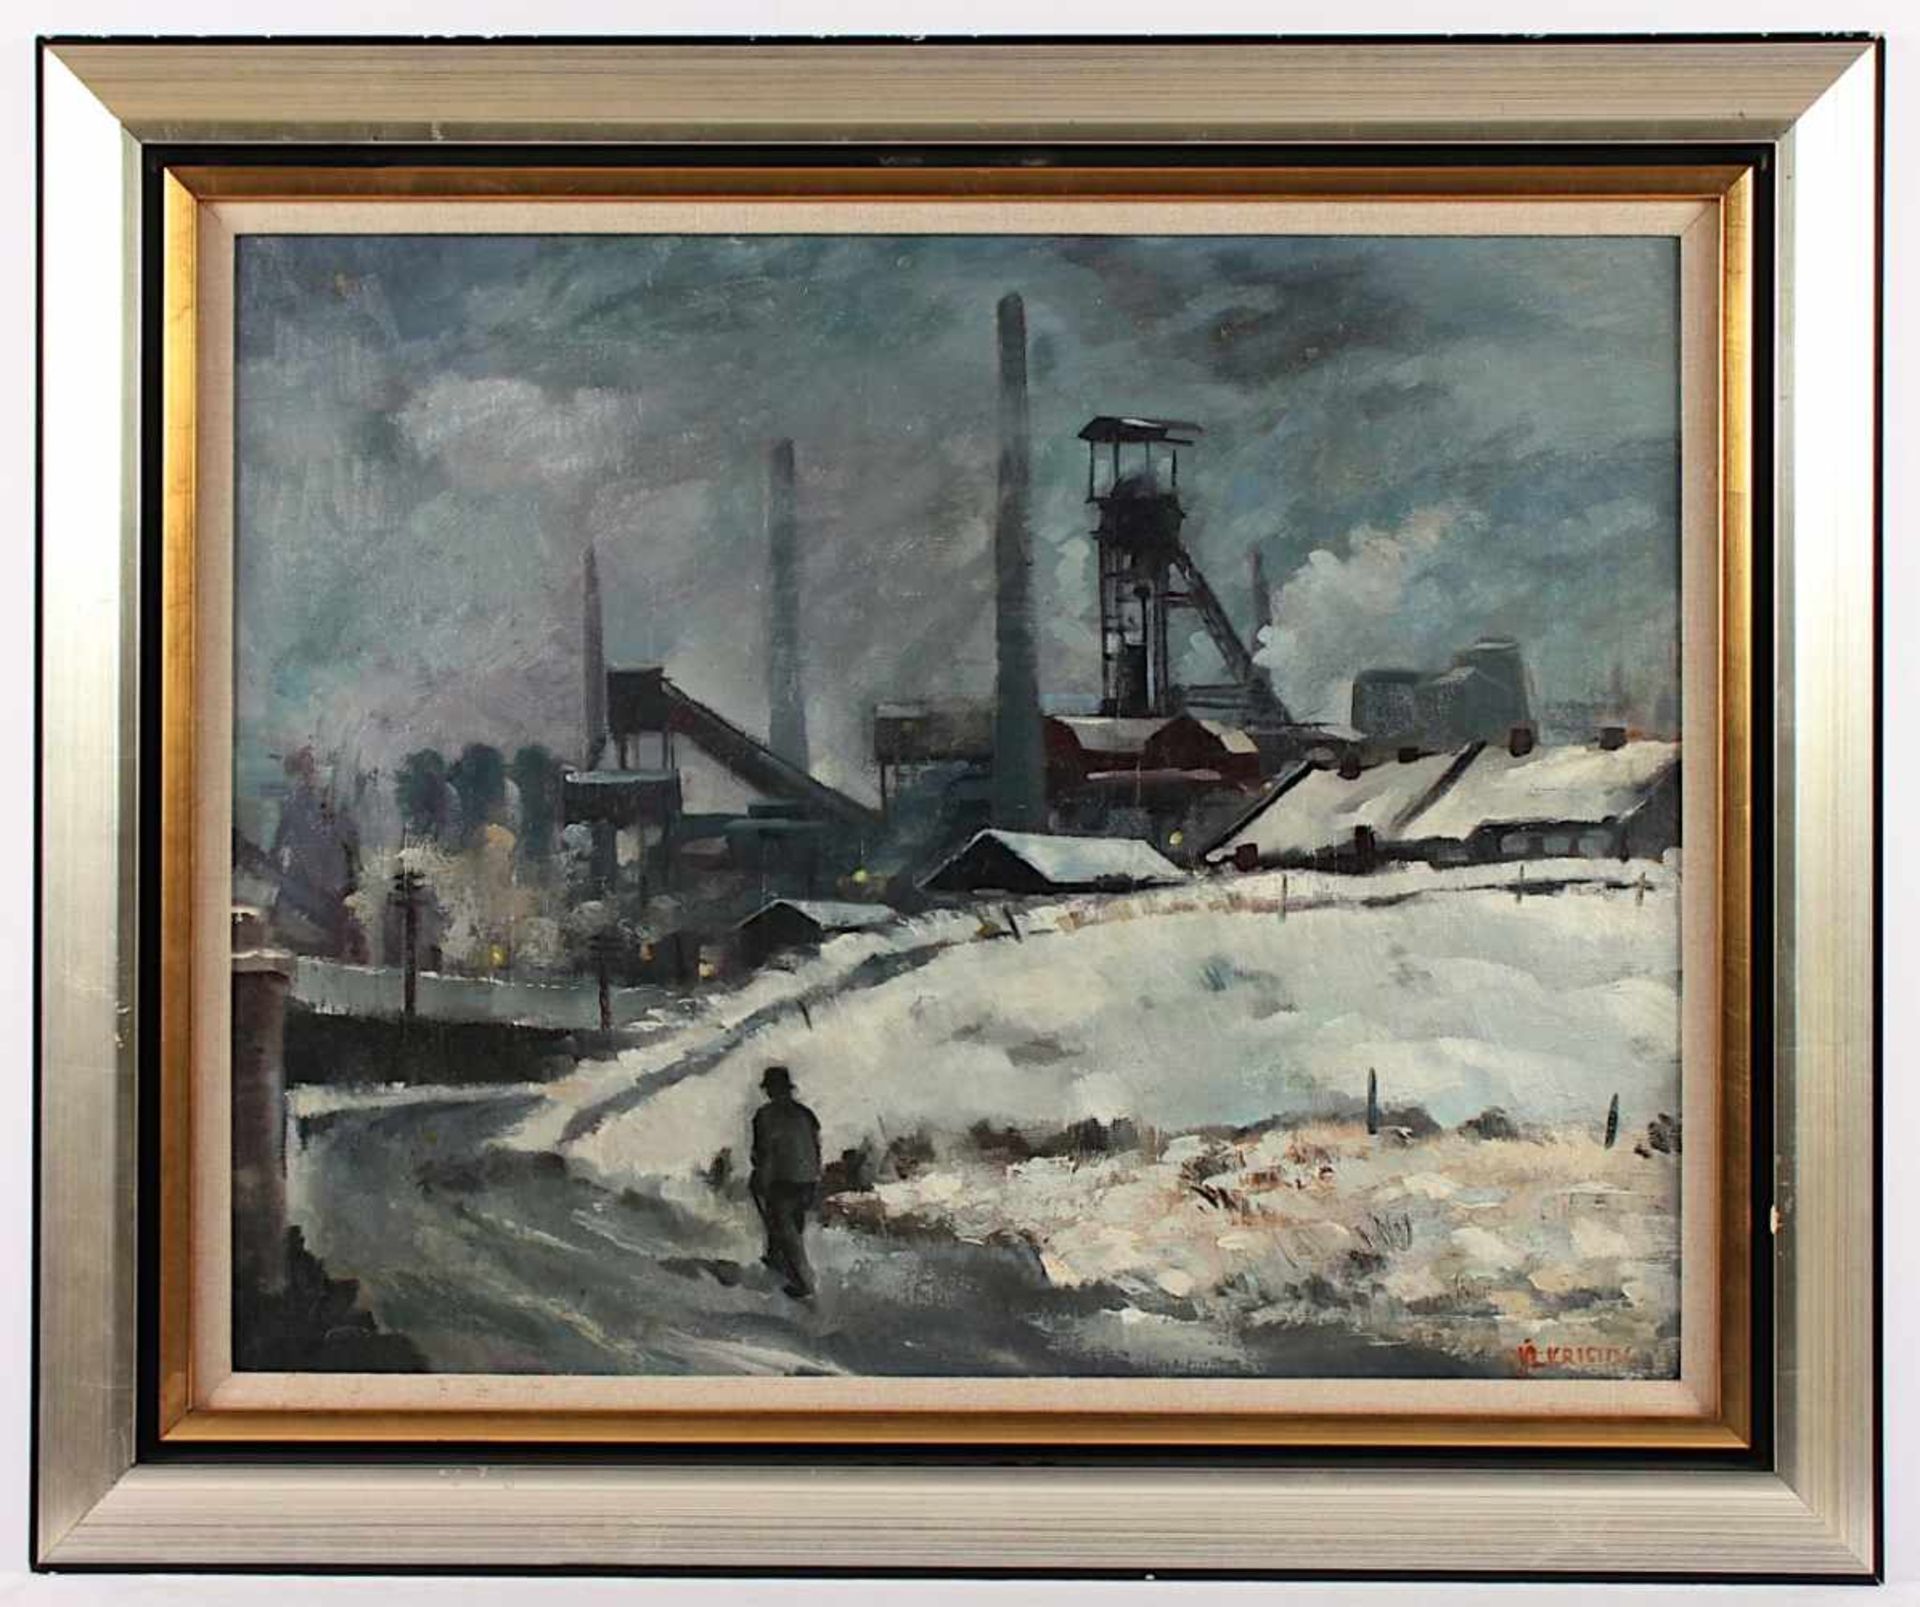 KRISTIN, Vladimir (1894-1970), "Arbeiter vor winterlicher Industrielandschaft", Öl/Lwd., 56 x 70,